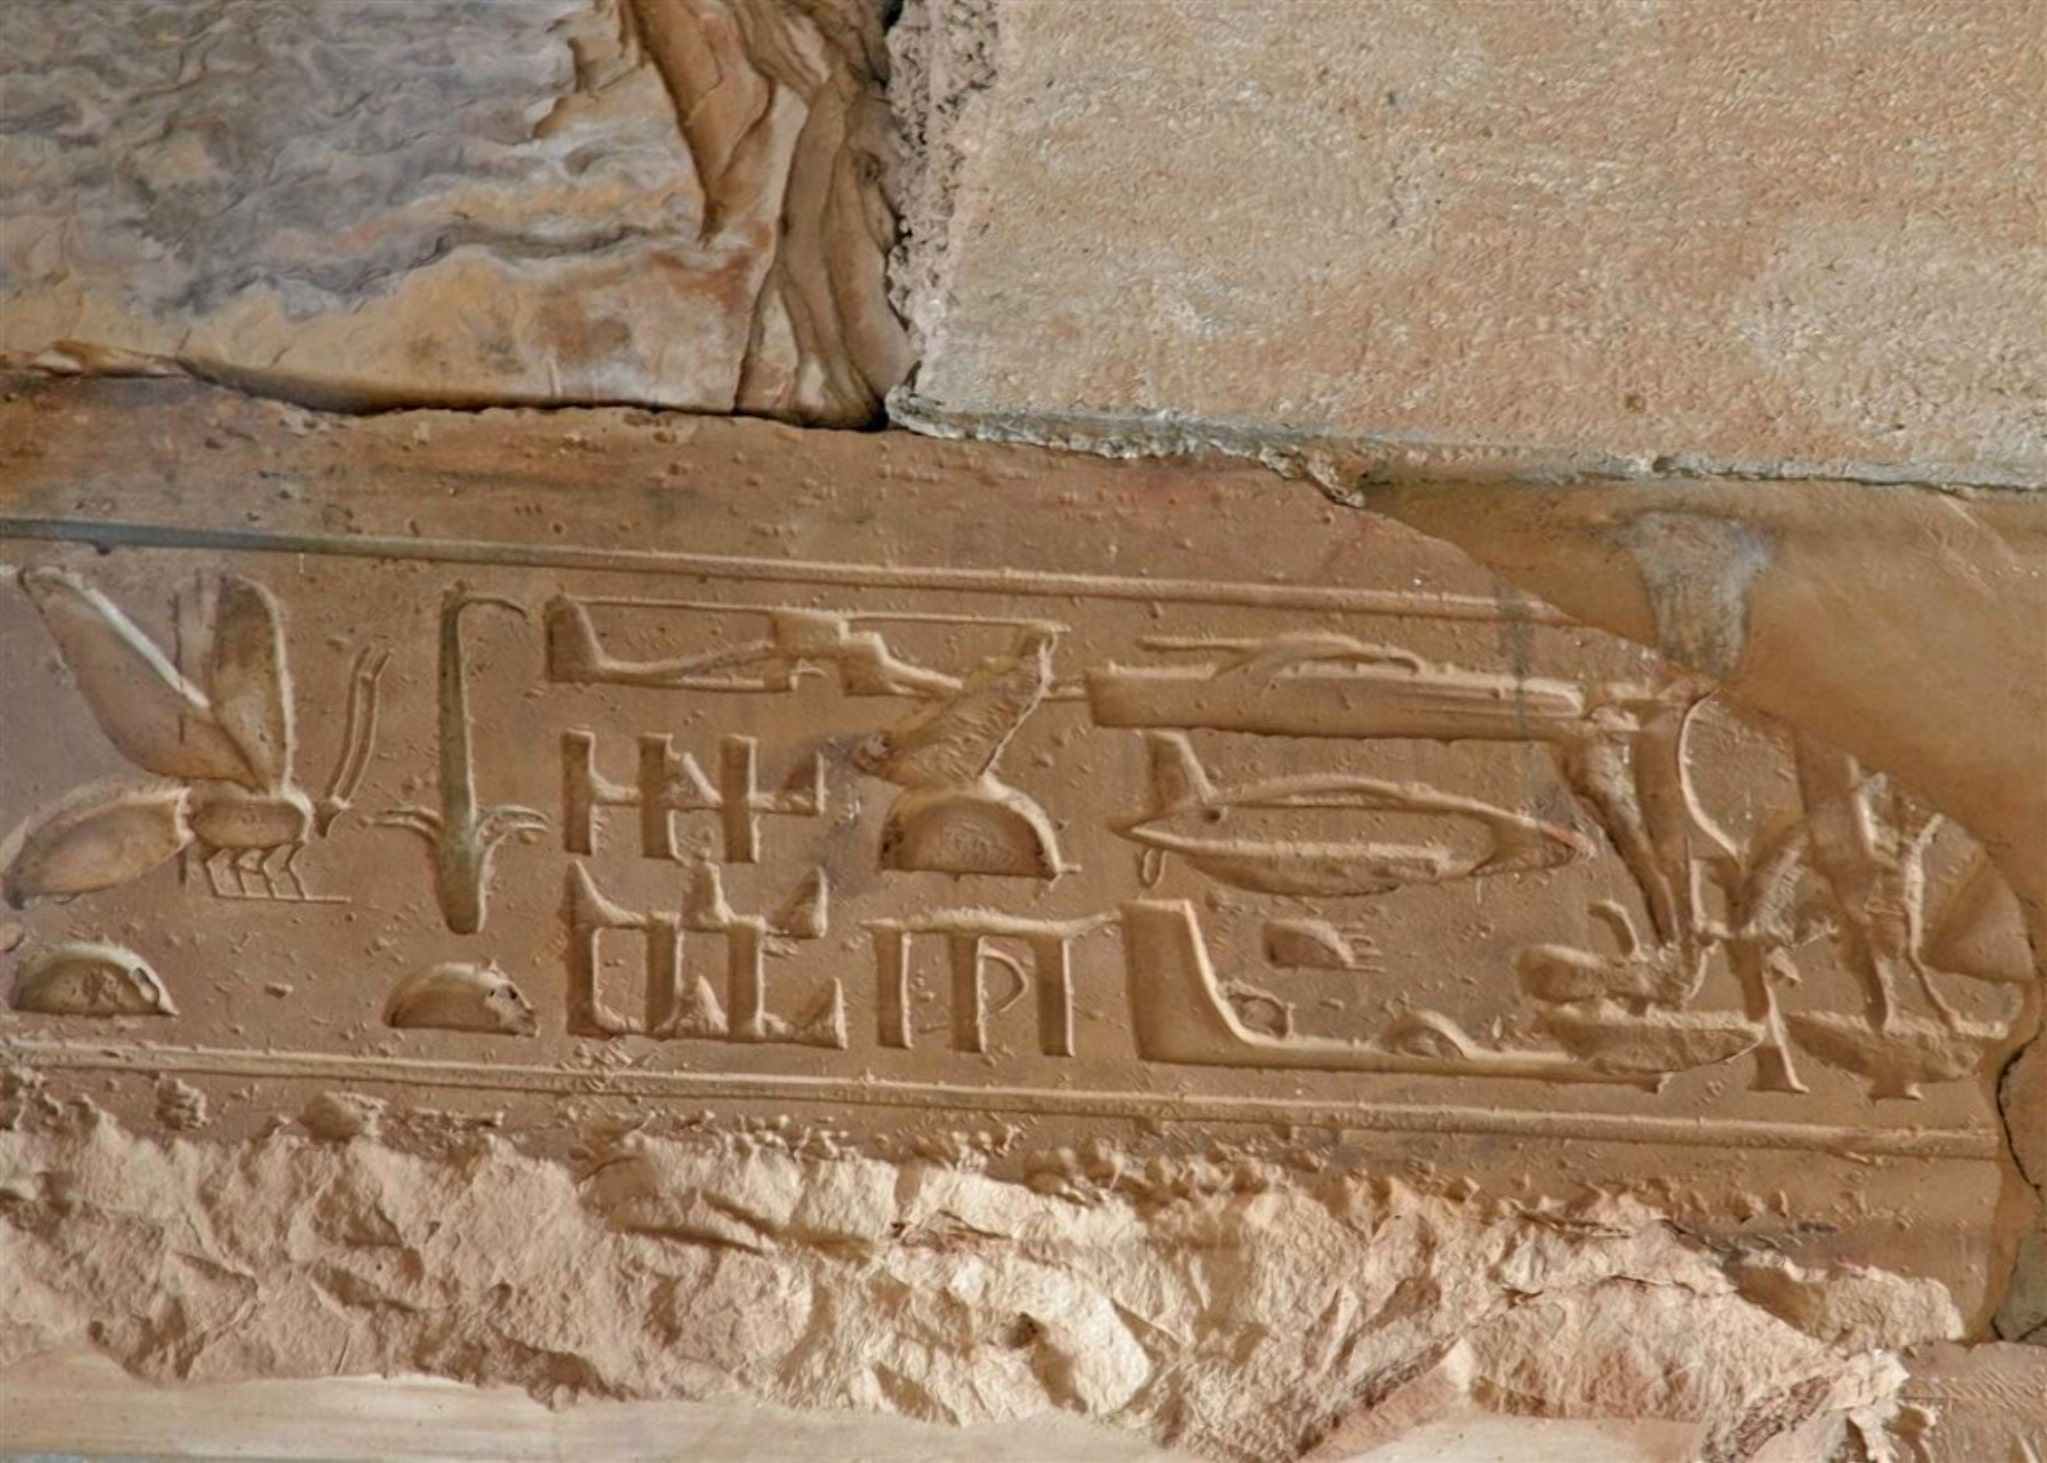 Cerfiadau Abydos